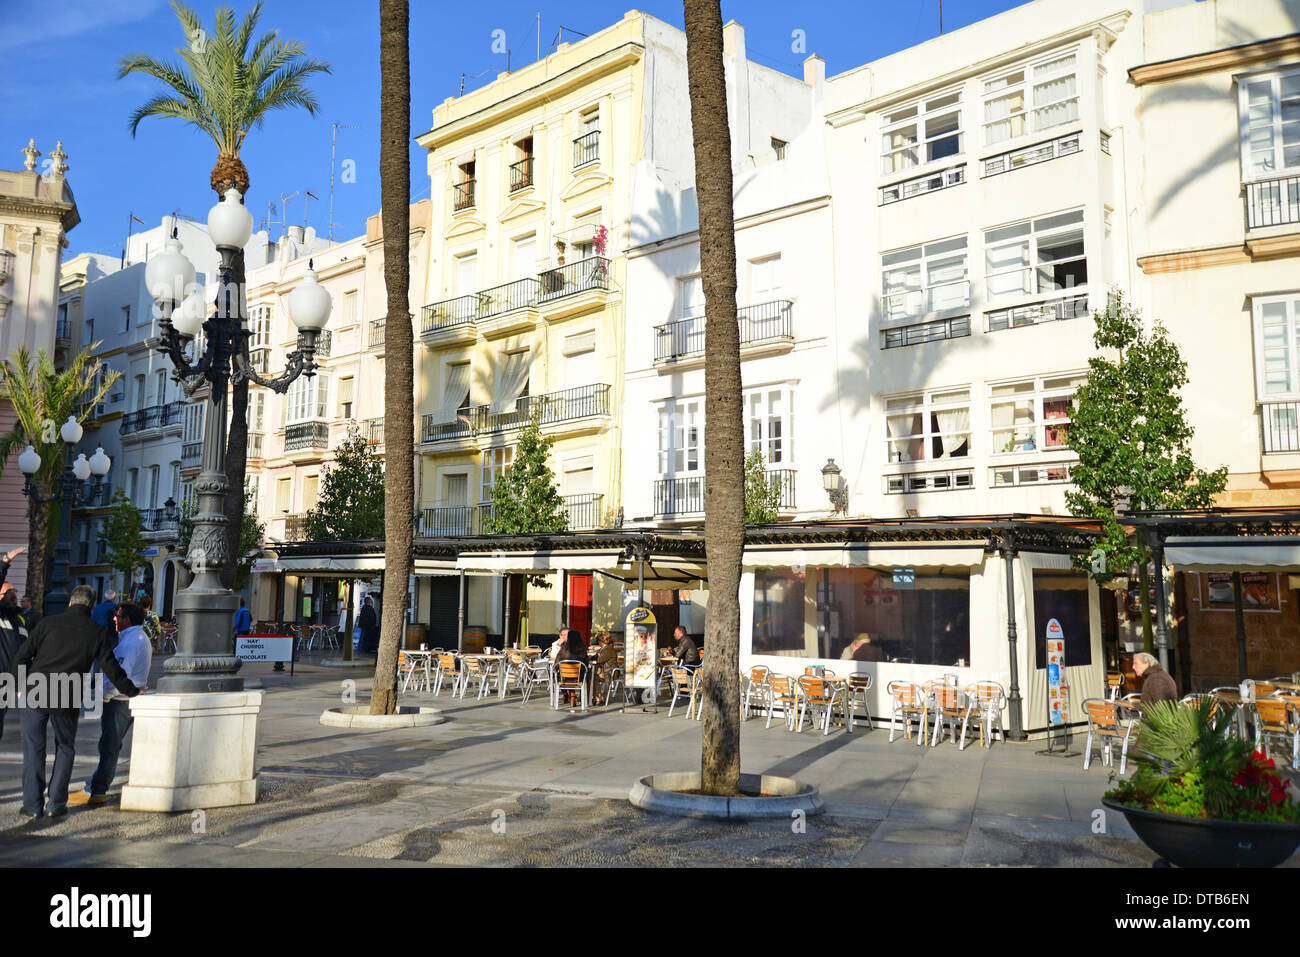 Plaza de San Juan de Dios, Cádiz, Cádiz Province, Andalusia, Spain Stock Photo